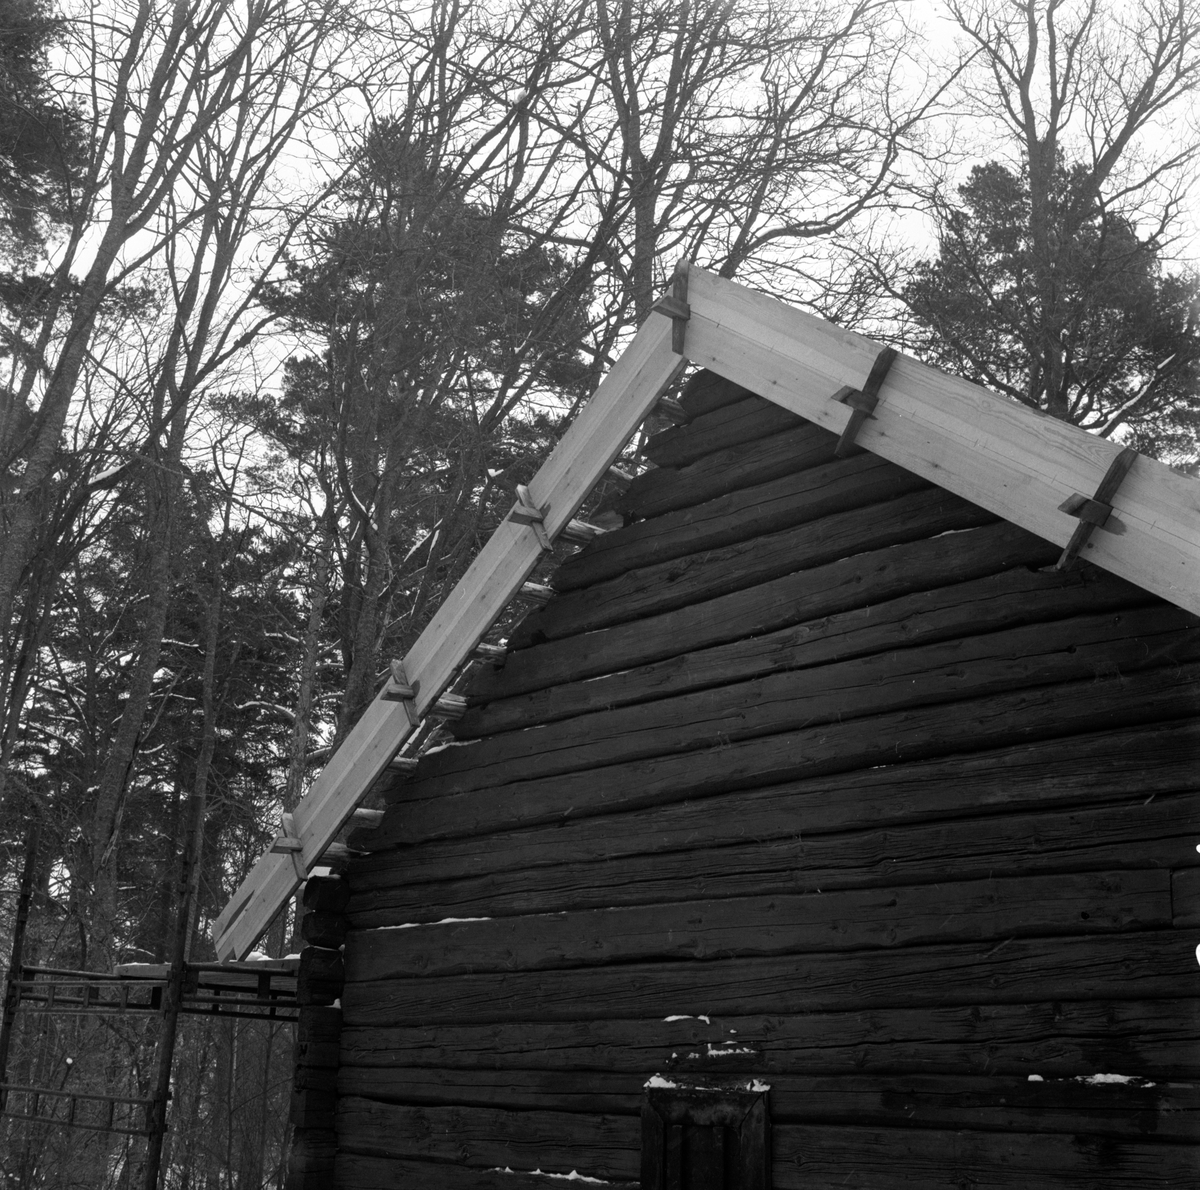 Friluftsmuseet, i Jönköpings stadspark, består av flera äldre byggnader till exempel soldattorpet, som flyttades från Linderås. Detta dokumenterades 1978-03-10.